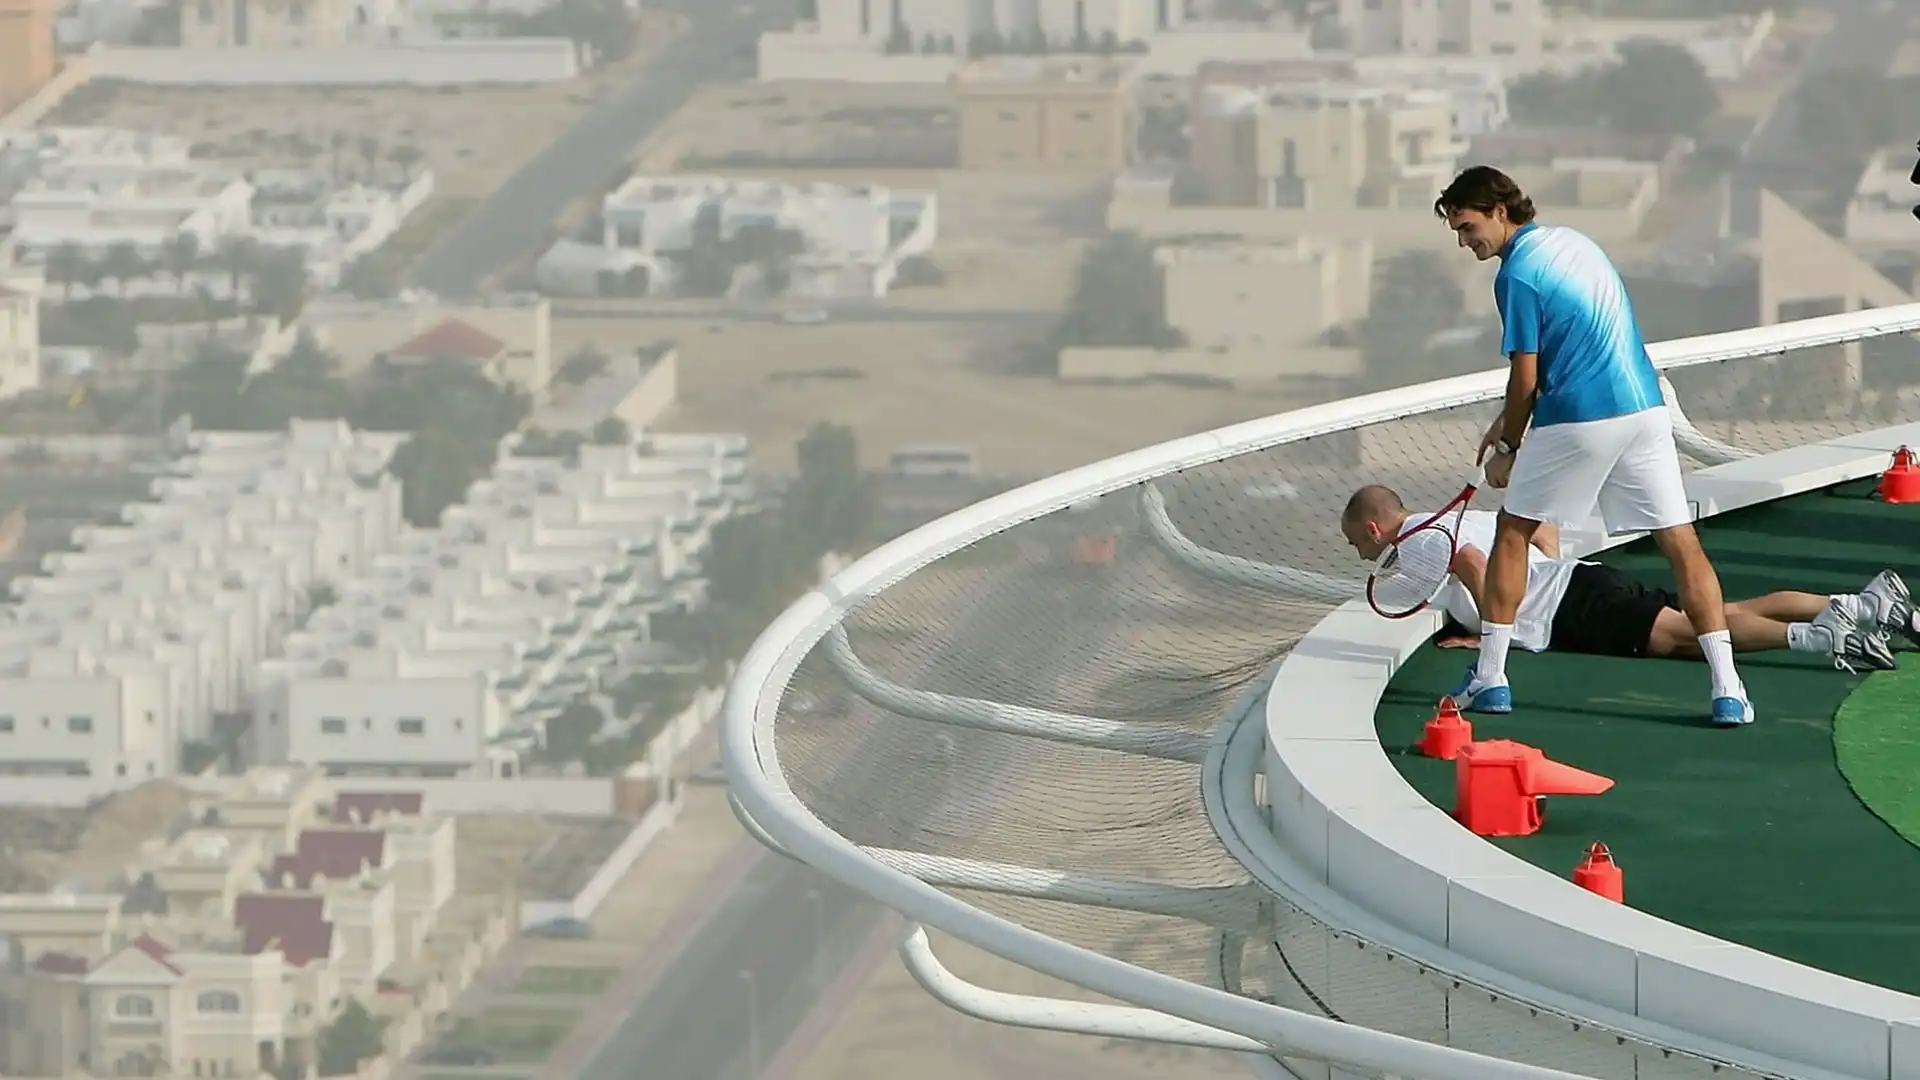 I due fuoriclasse del tennis, prima del torneo di Dubai, si allenarono in un campo di erba sintetica sistemato sull'eliporto del Burj Al Arab, uno degli hotel più lussuosi del mondo